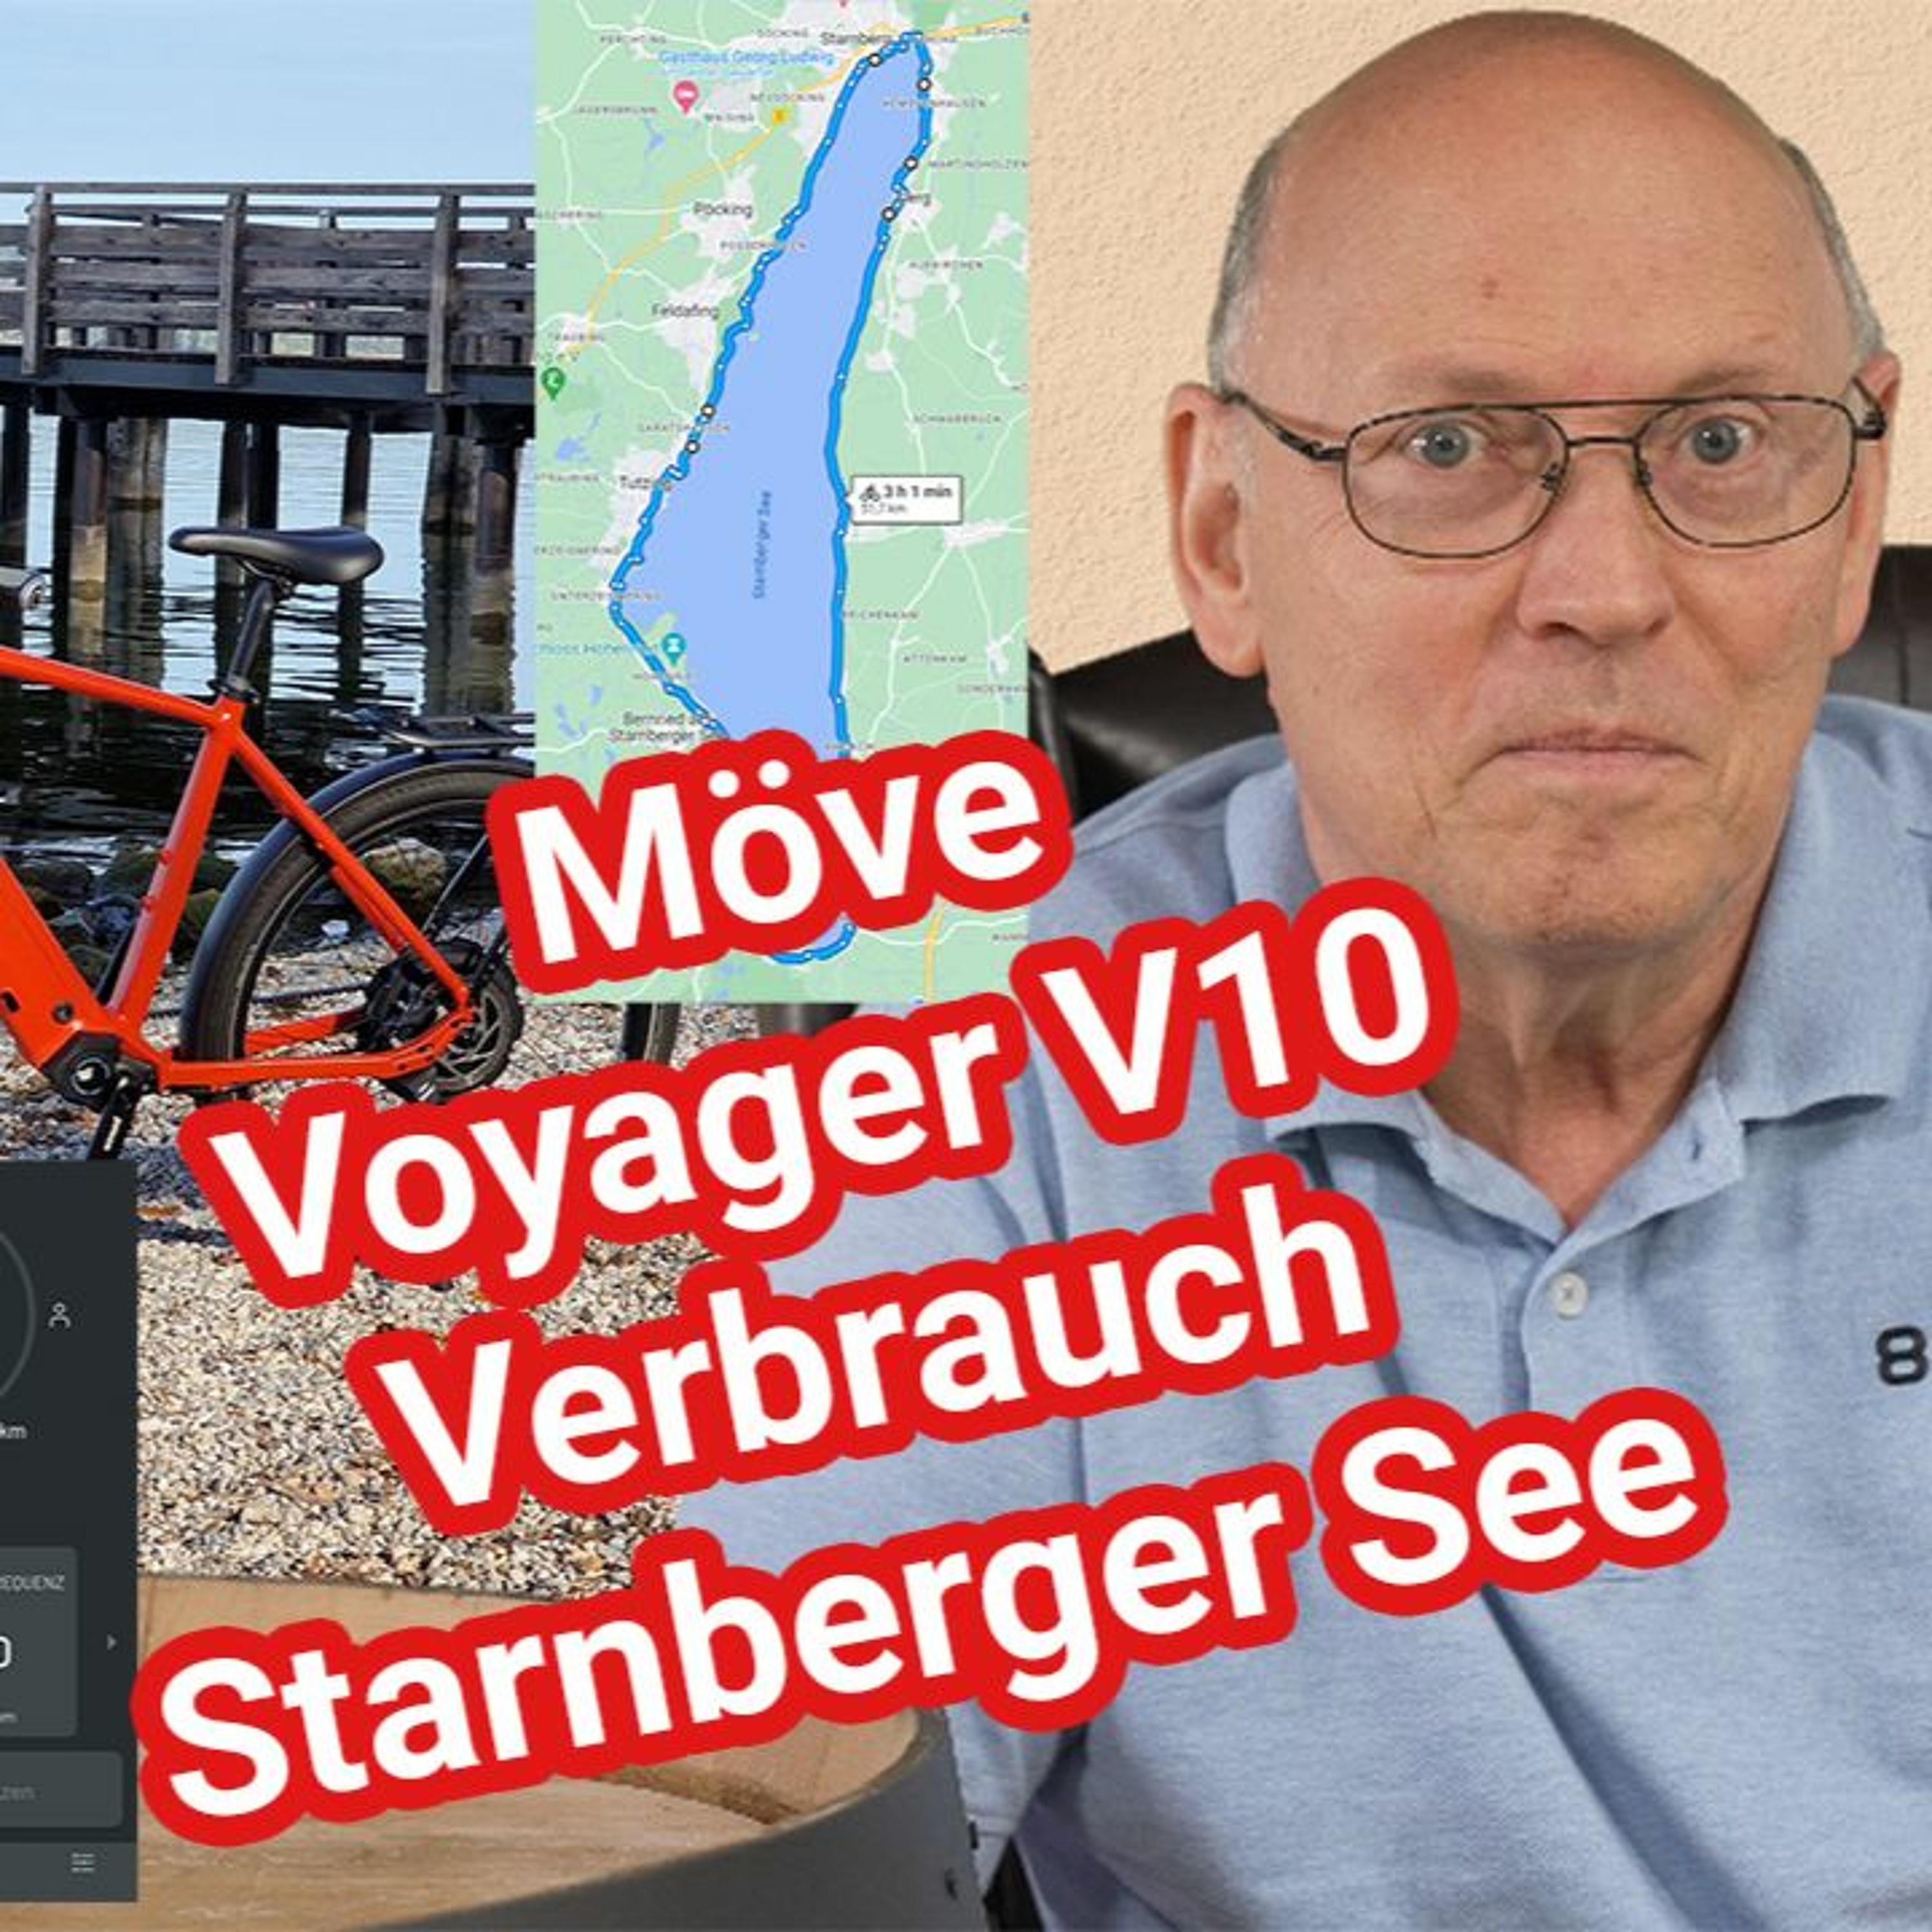 Möve Voyager V10 - e-Bike Verbrauchsmessung rund um den Starnberger See